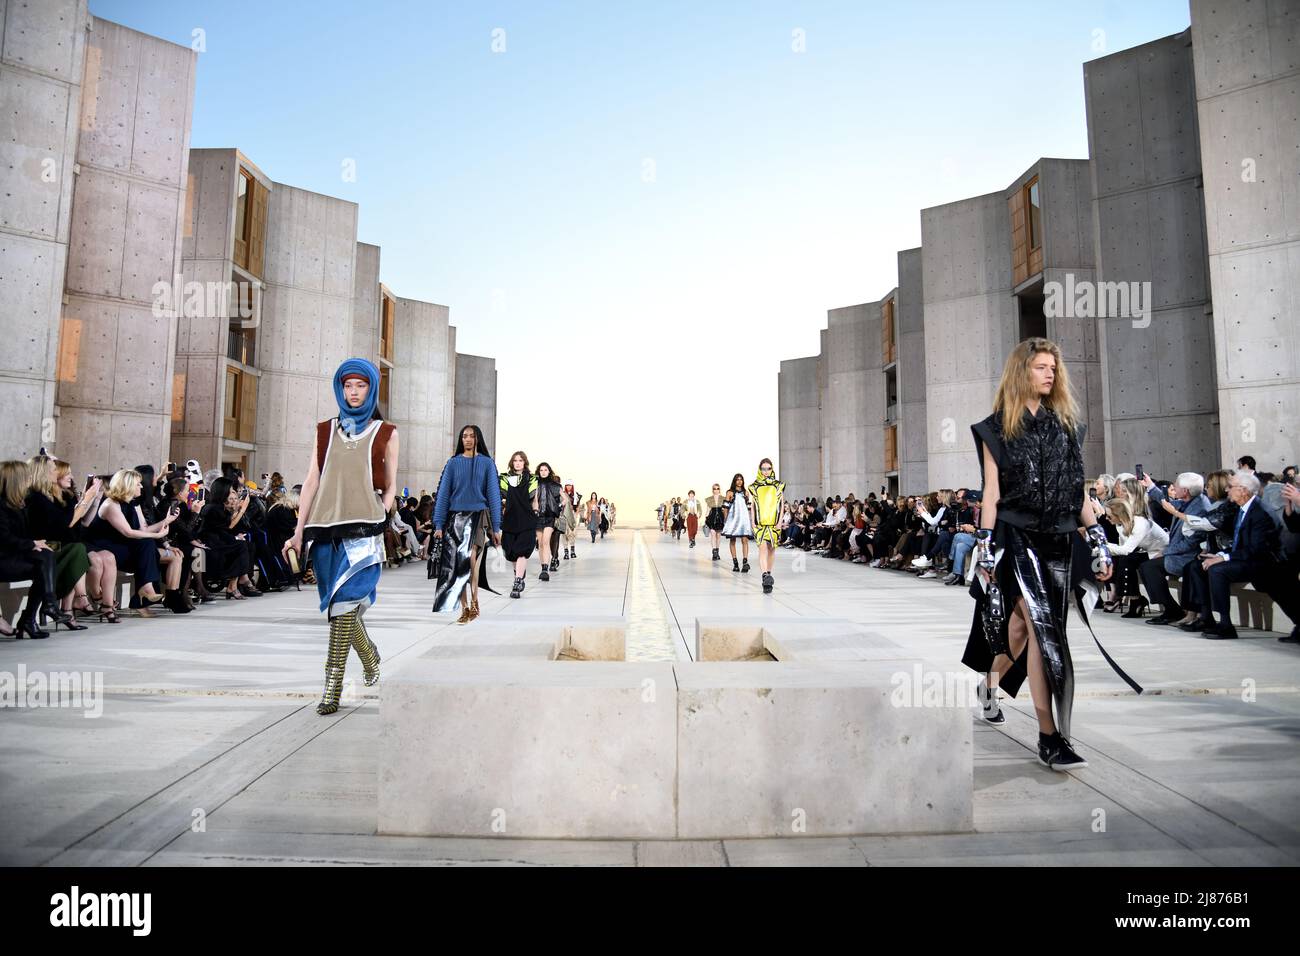 Louis Vuitton Opens Its Doors In La Jolla